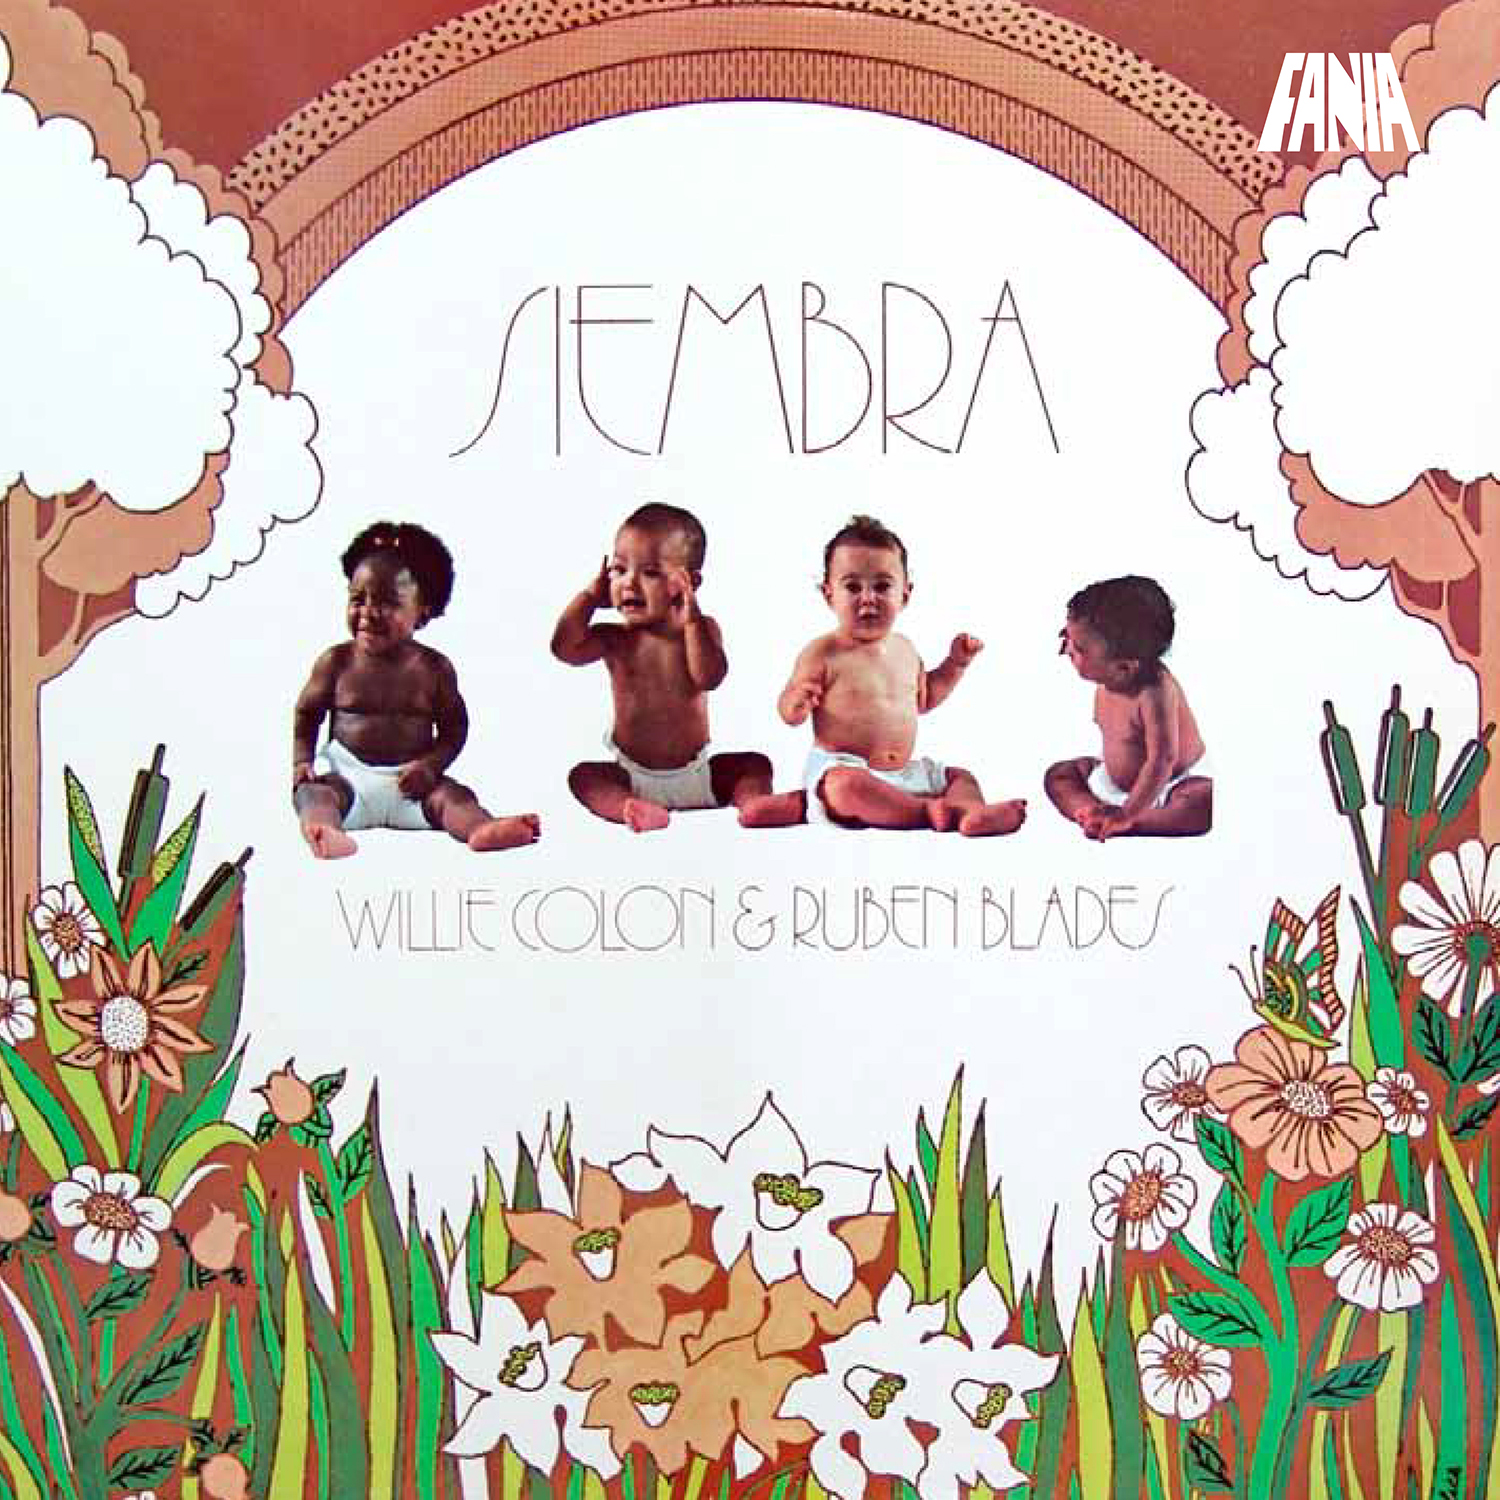 Willie Colón & Rubén Blades - Siembra album cover